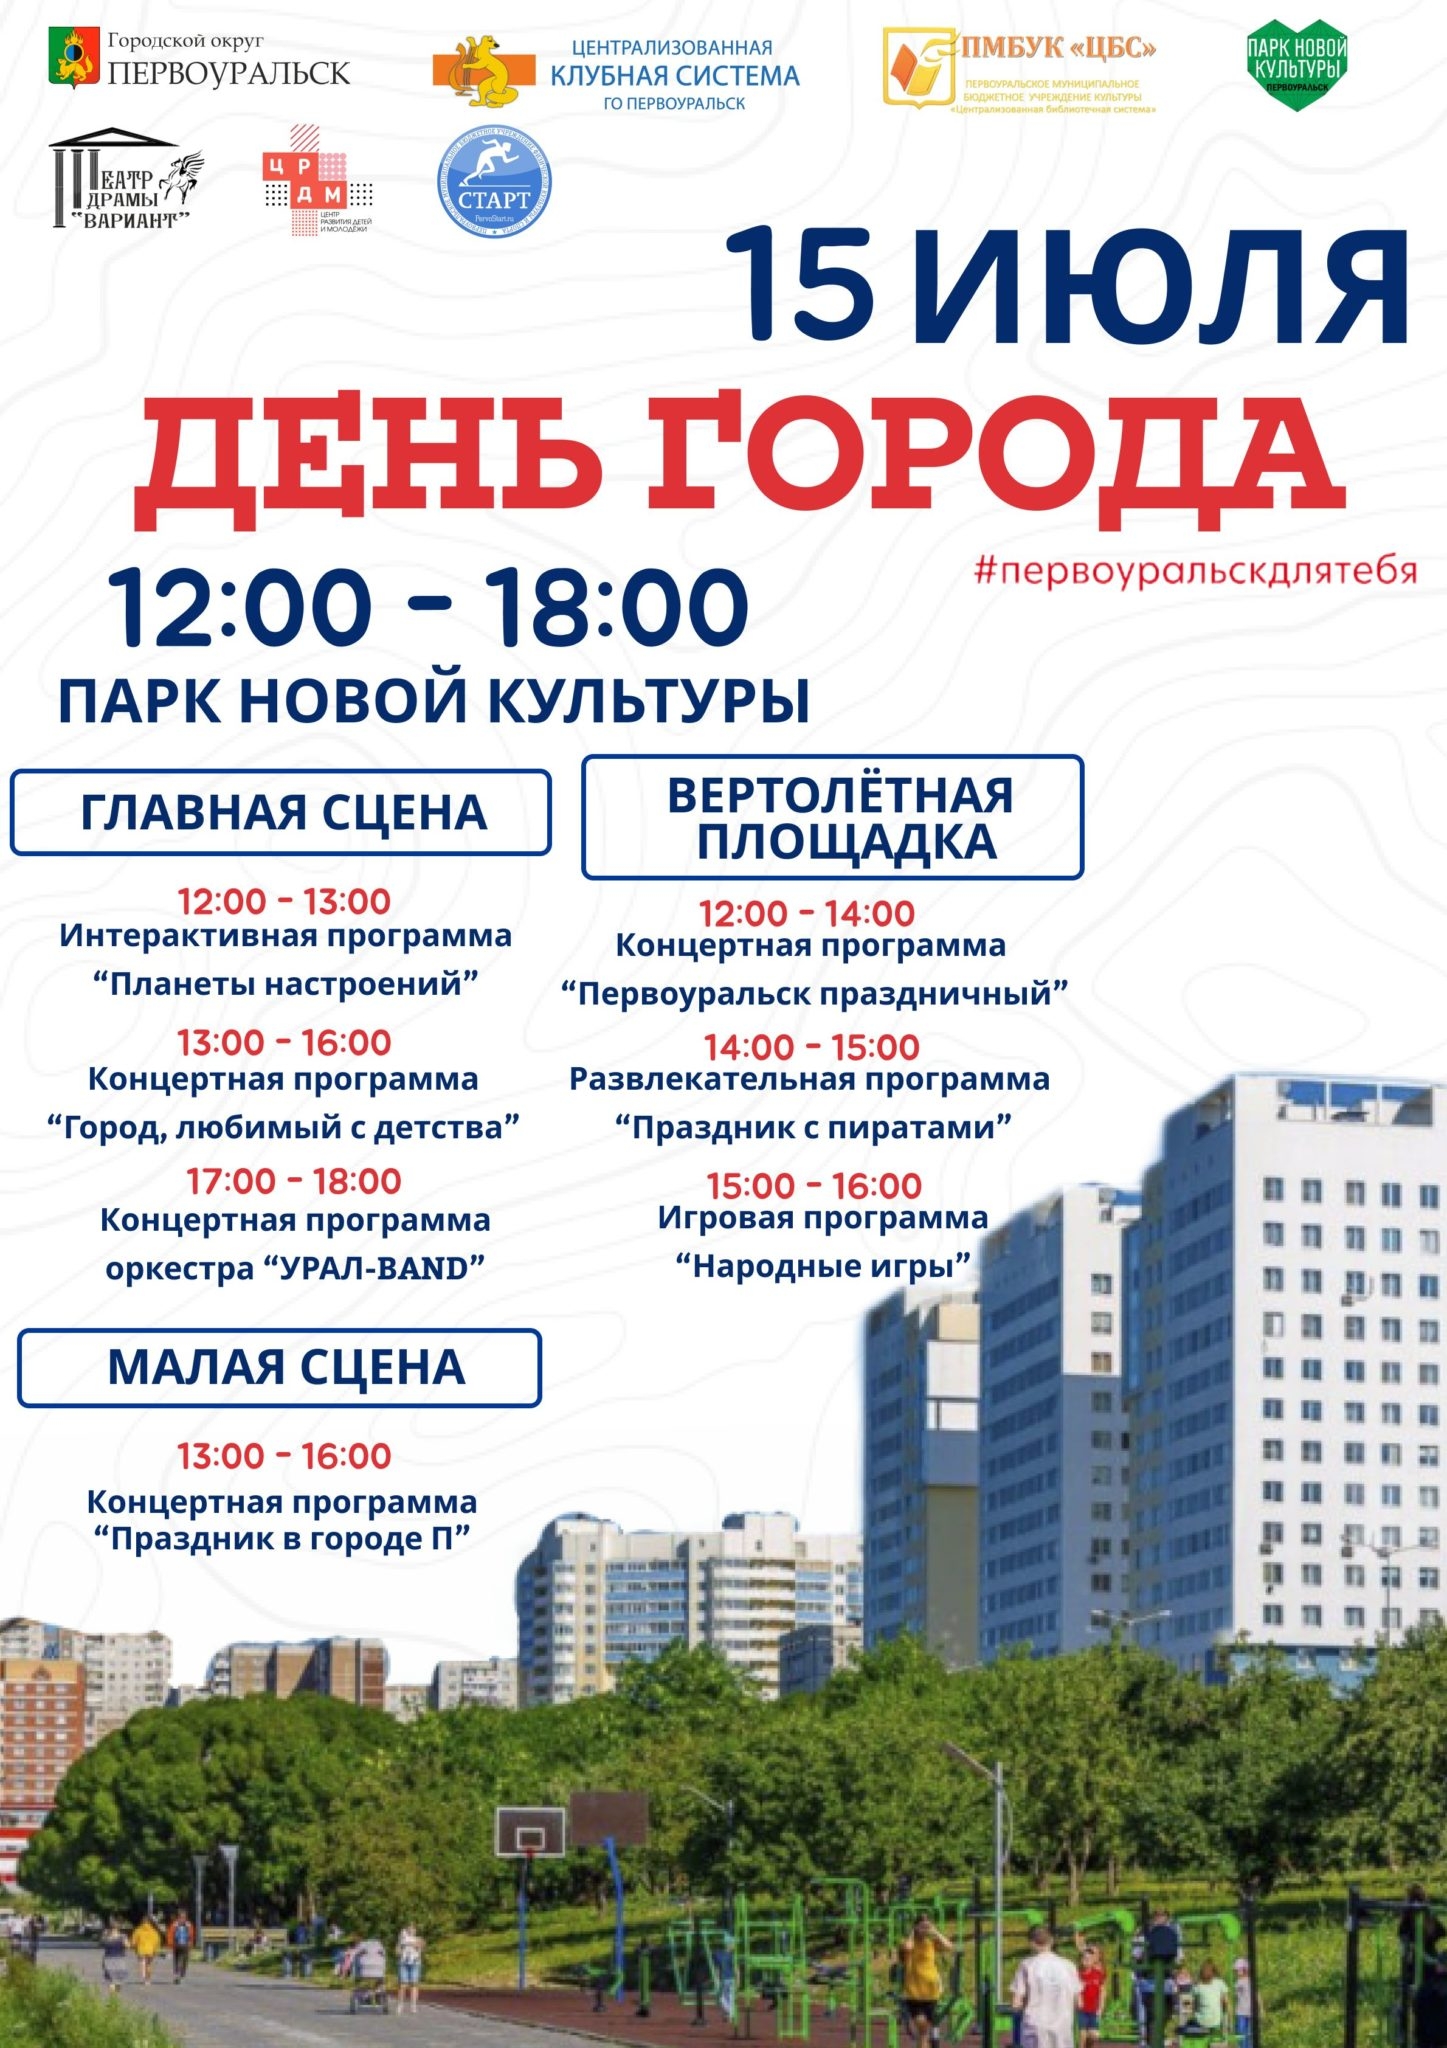 Сегодня, 15 июля, в Первоуральске пройдёт День города. Программа